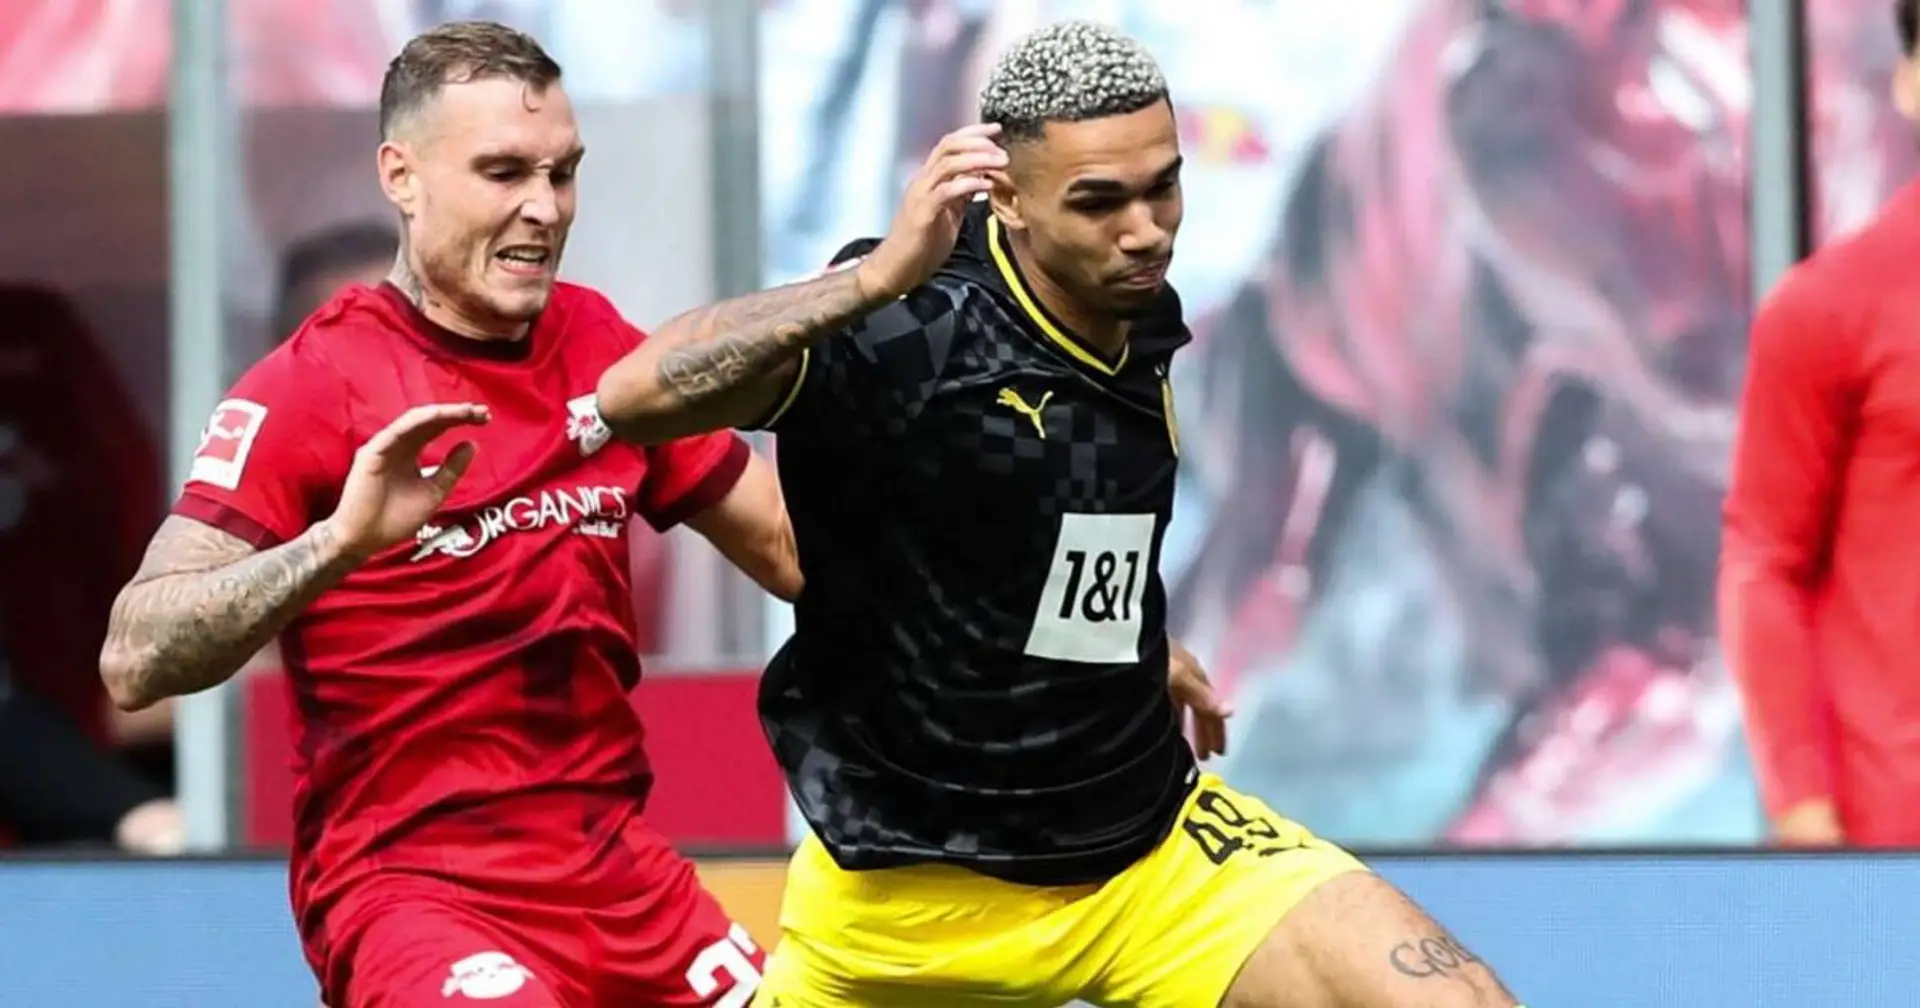 Njinmah blickt auf sein Bundesliga-Debüt beim BVB zurück: "Damit hat niemand gerechnet, außer ich selber vielleicht"